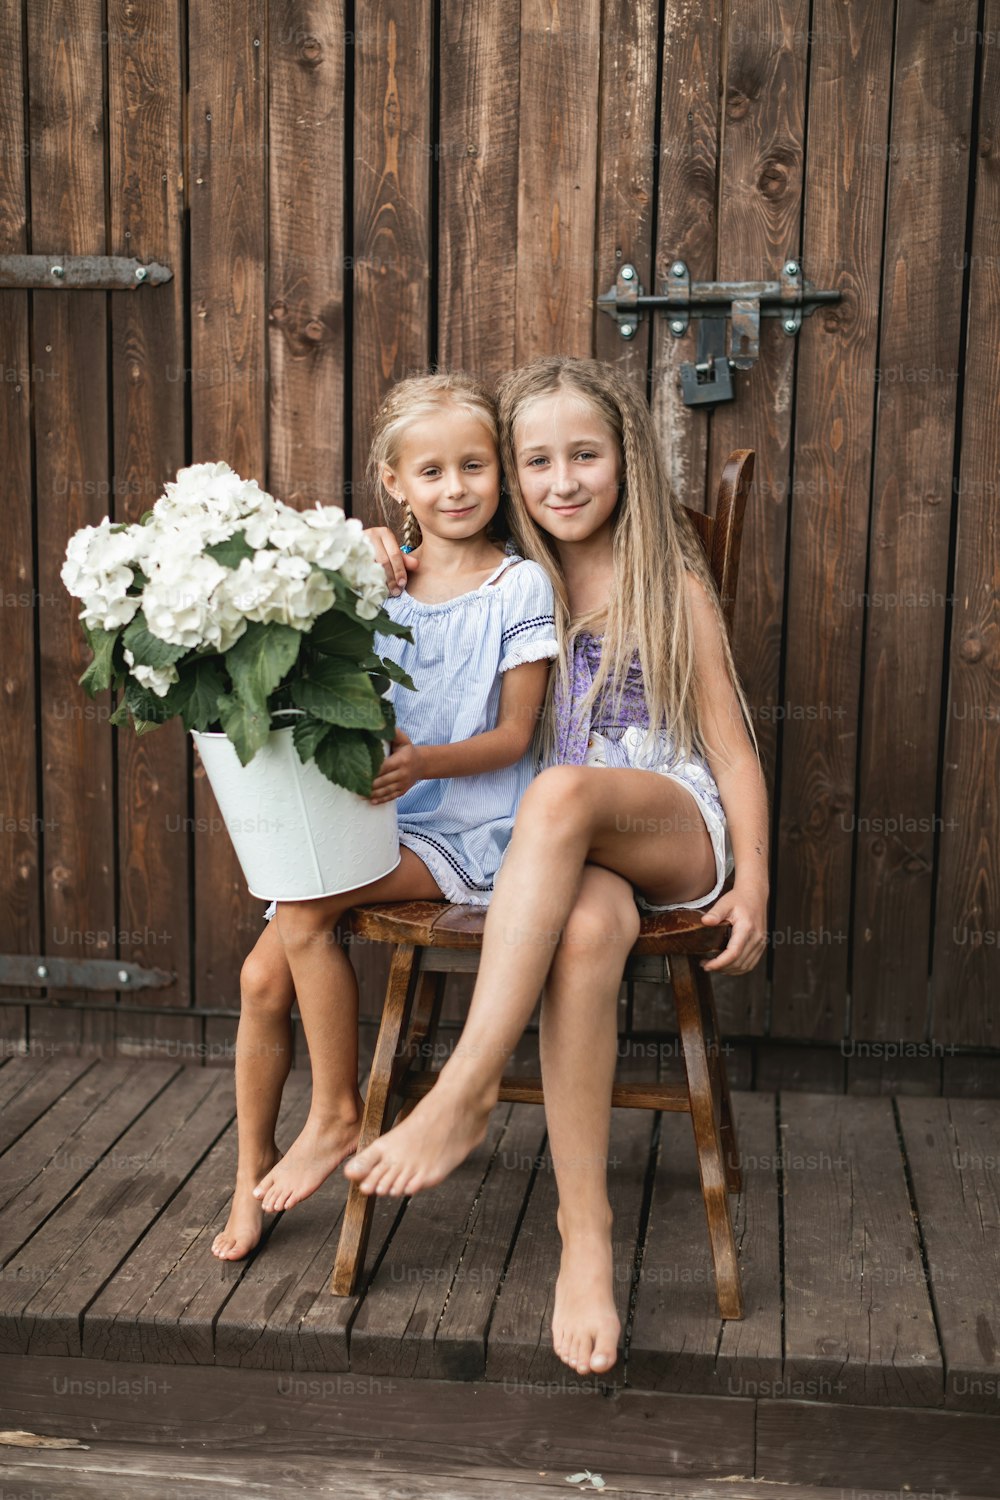 두 명의 행복한 금발 머리 소녀, 자매 또는 친구, 야외 오래된 나무 헛간 근처의 나무 의자에 함께 앉아 꽃 꽃다발, 양동이에 흰색 수국을 들고 있습니다.